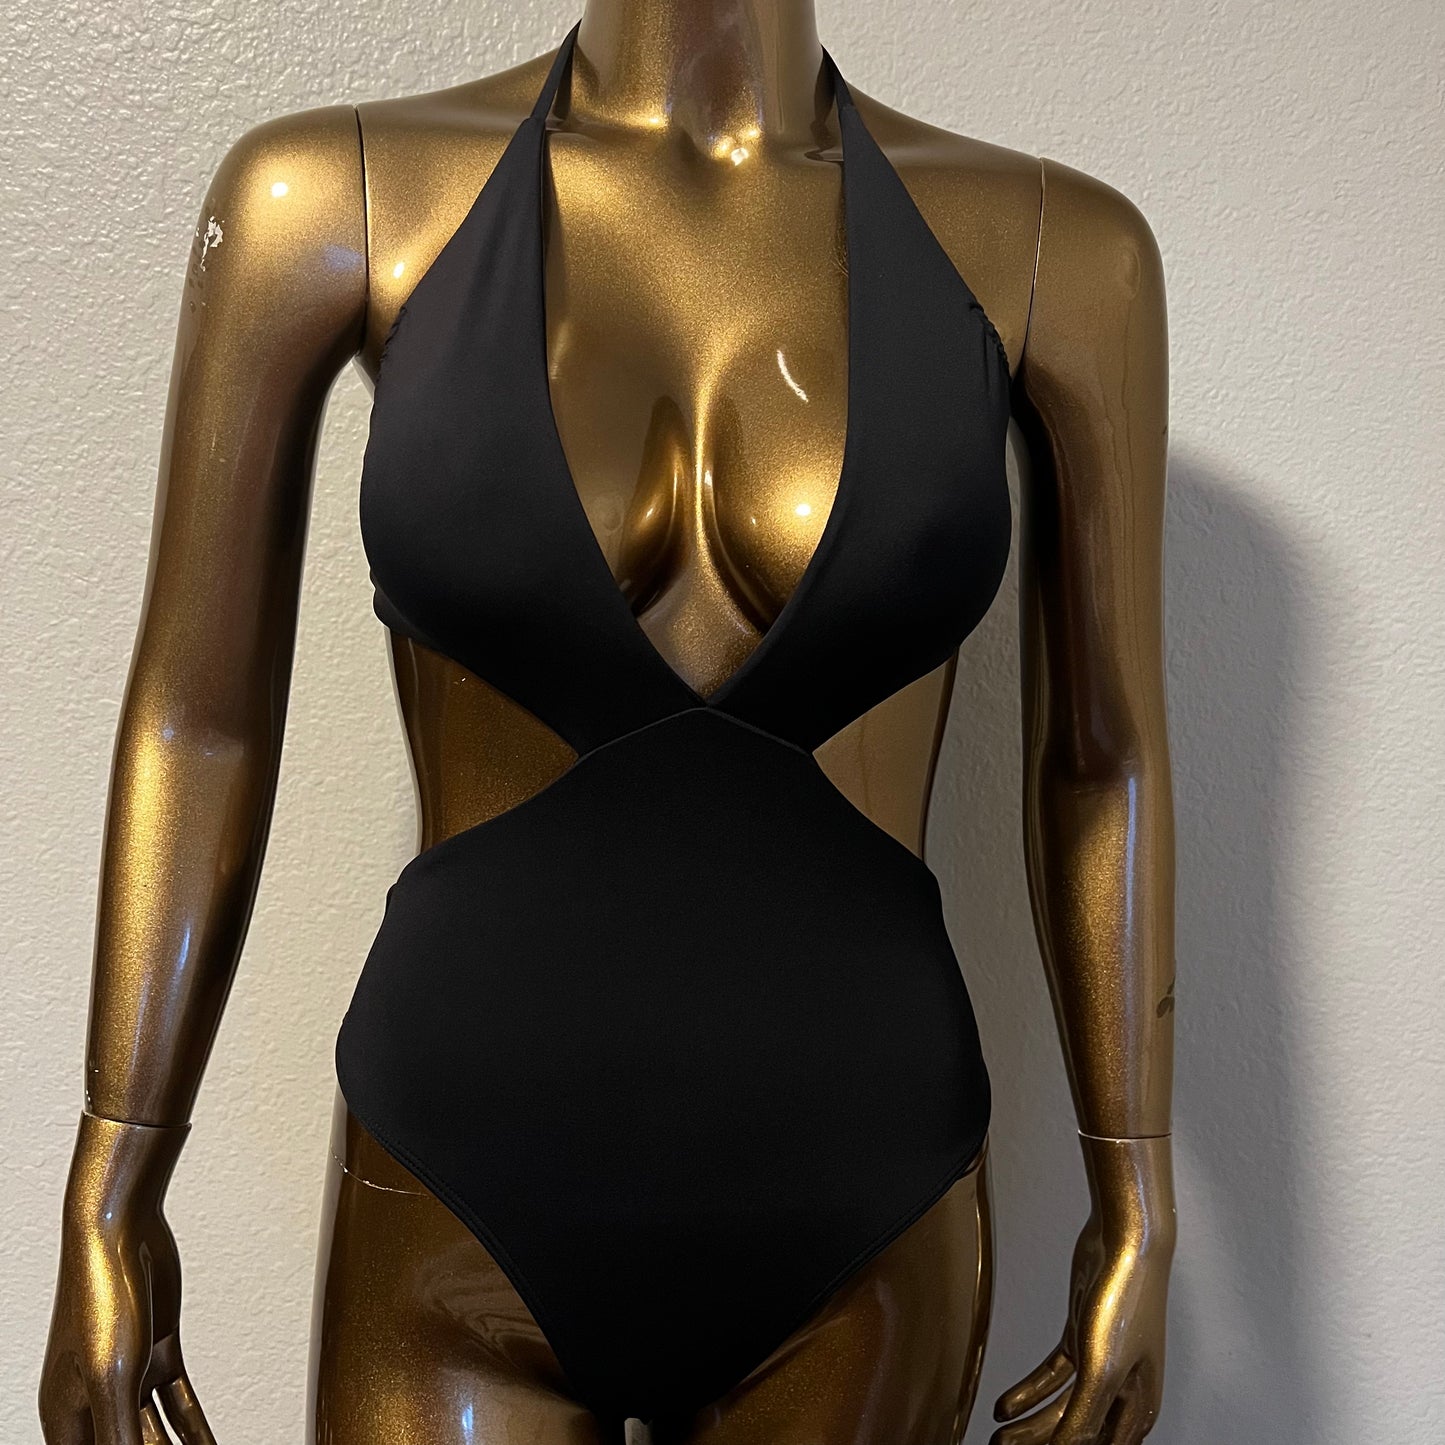 Waikiki Bodysuit/One Piece- Black - On The Lo Swimwear